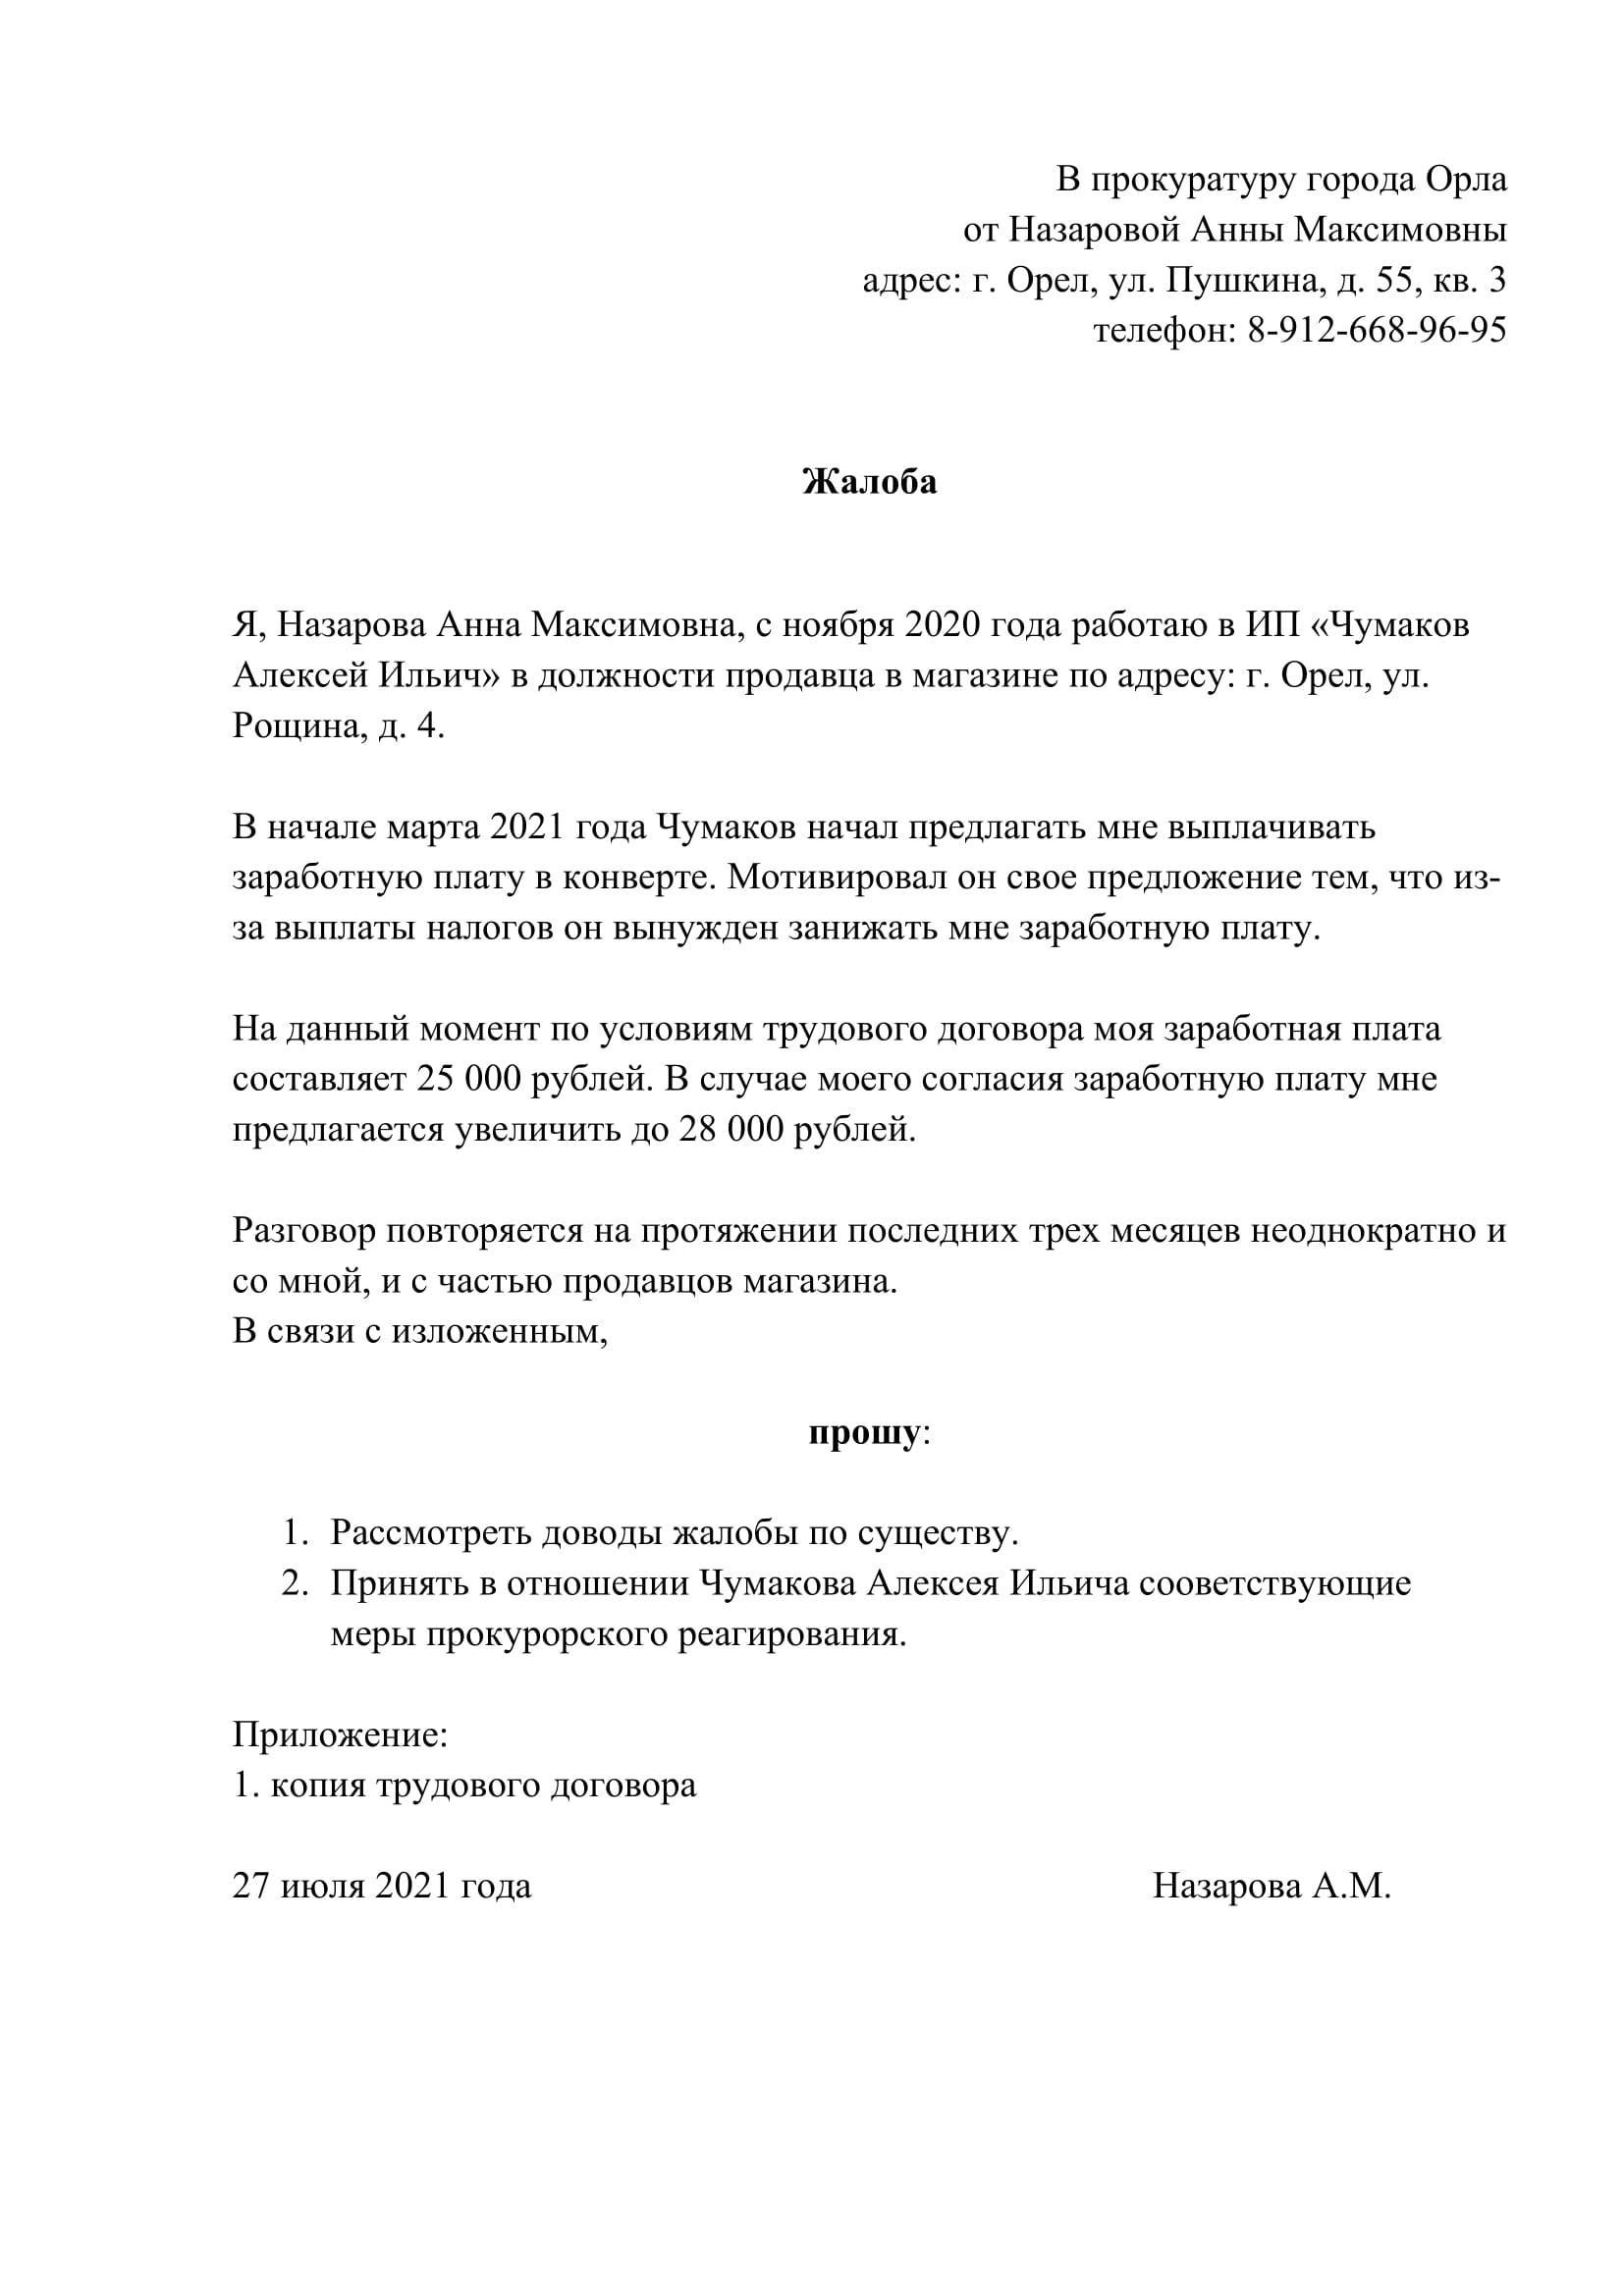 Образец заявления в прокуратуру и все тонкости правильного заполнения :: businessman.ru